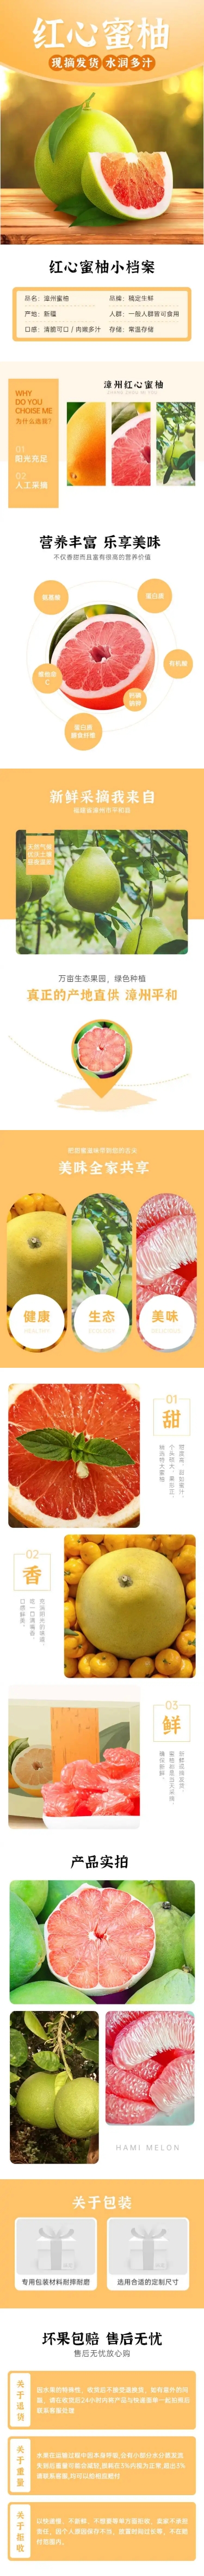 生鲜食品水果柚子详情页